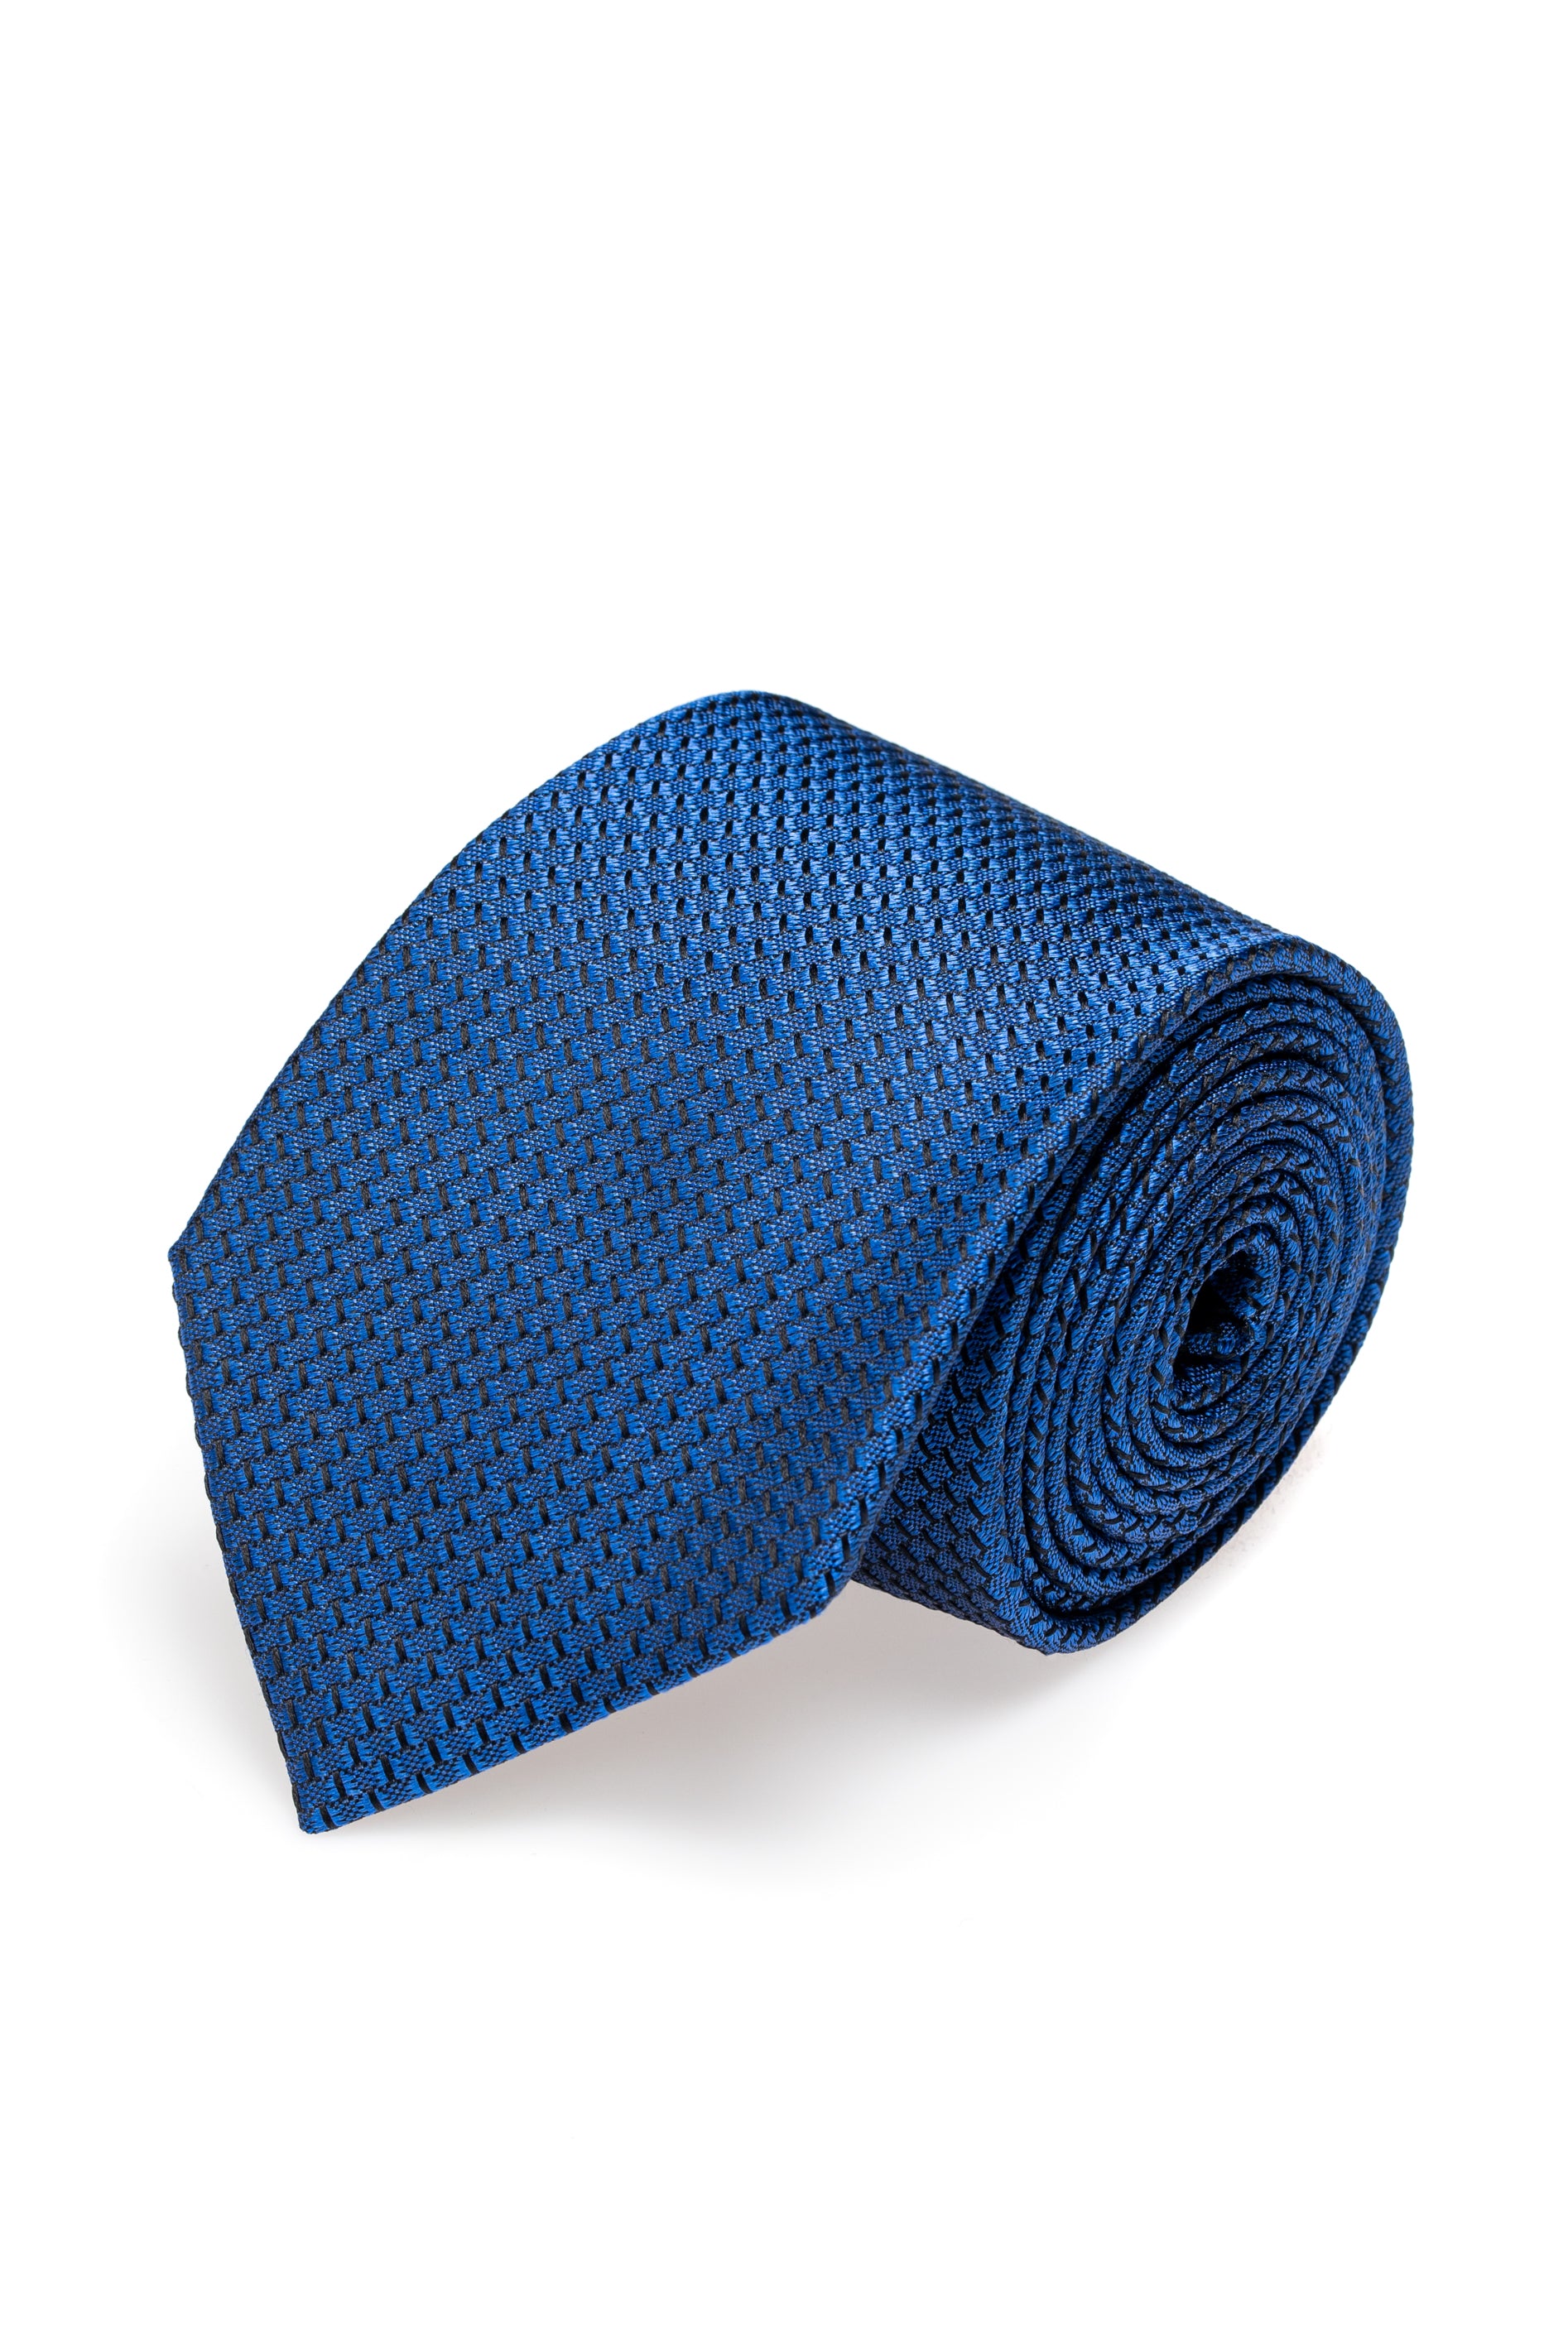 Textured navy silk tie